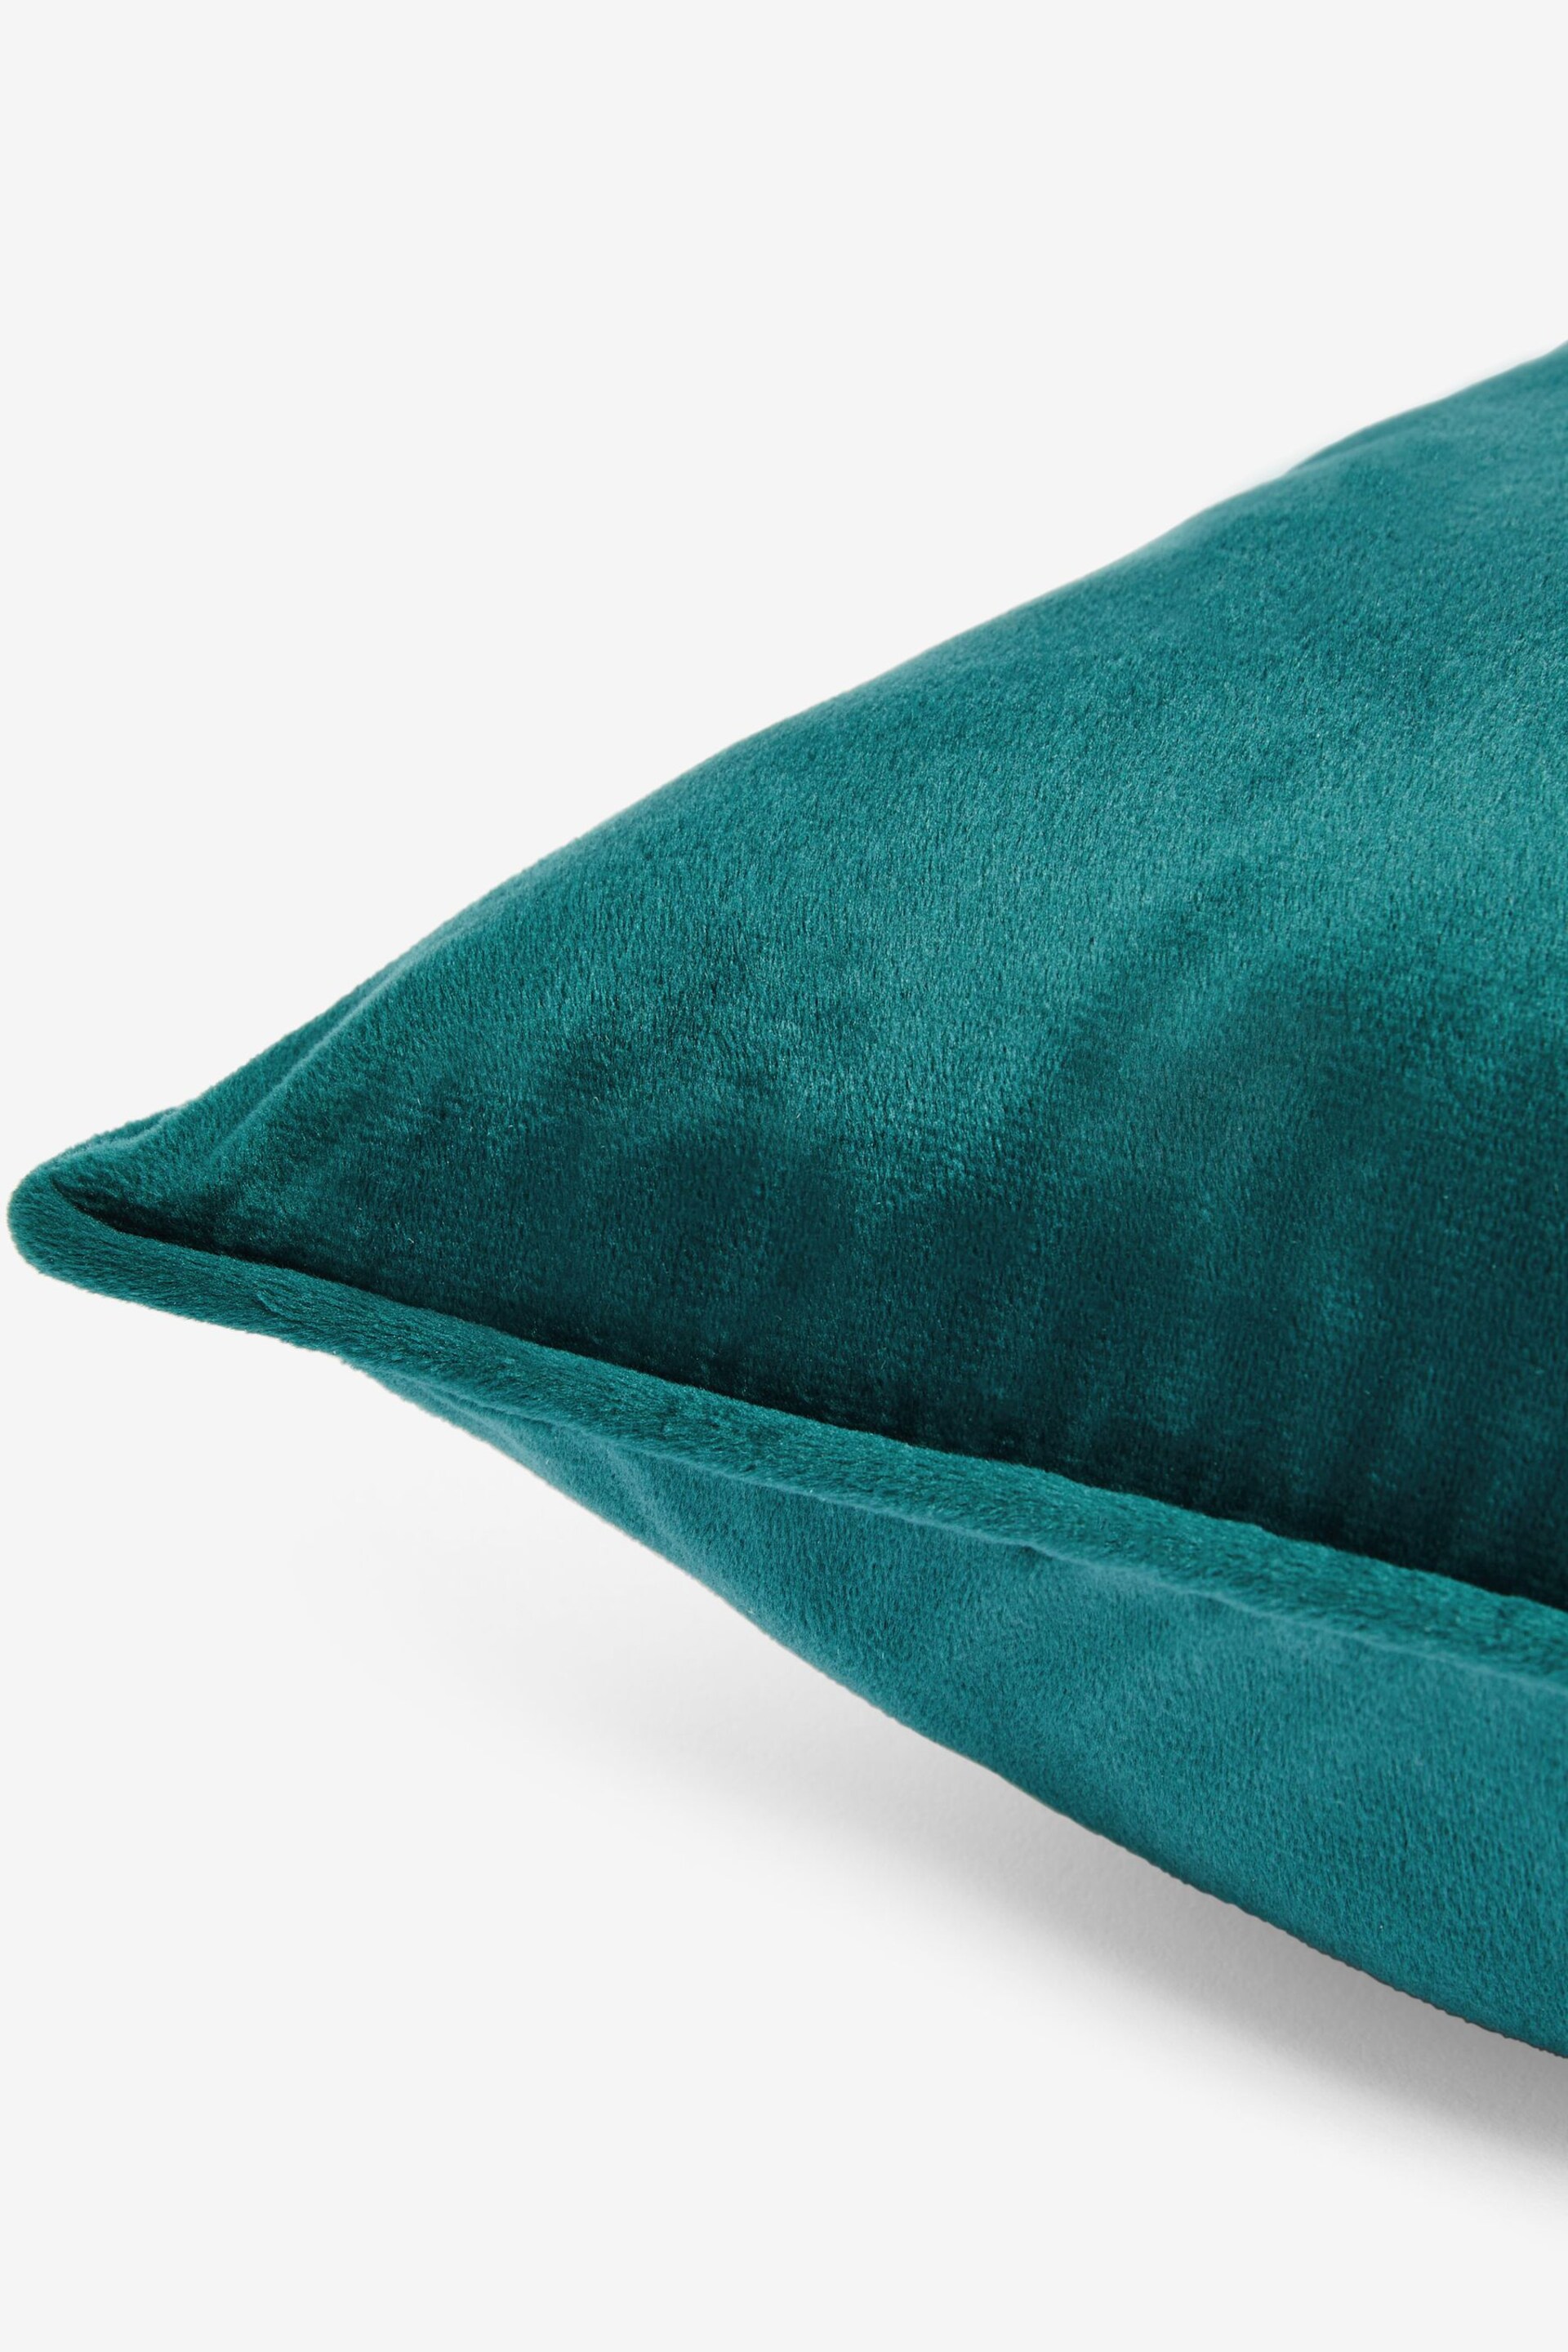 Dark Teal 59 x 59cm Matte Velvet Cushion - Image 4 of 4